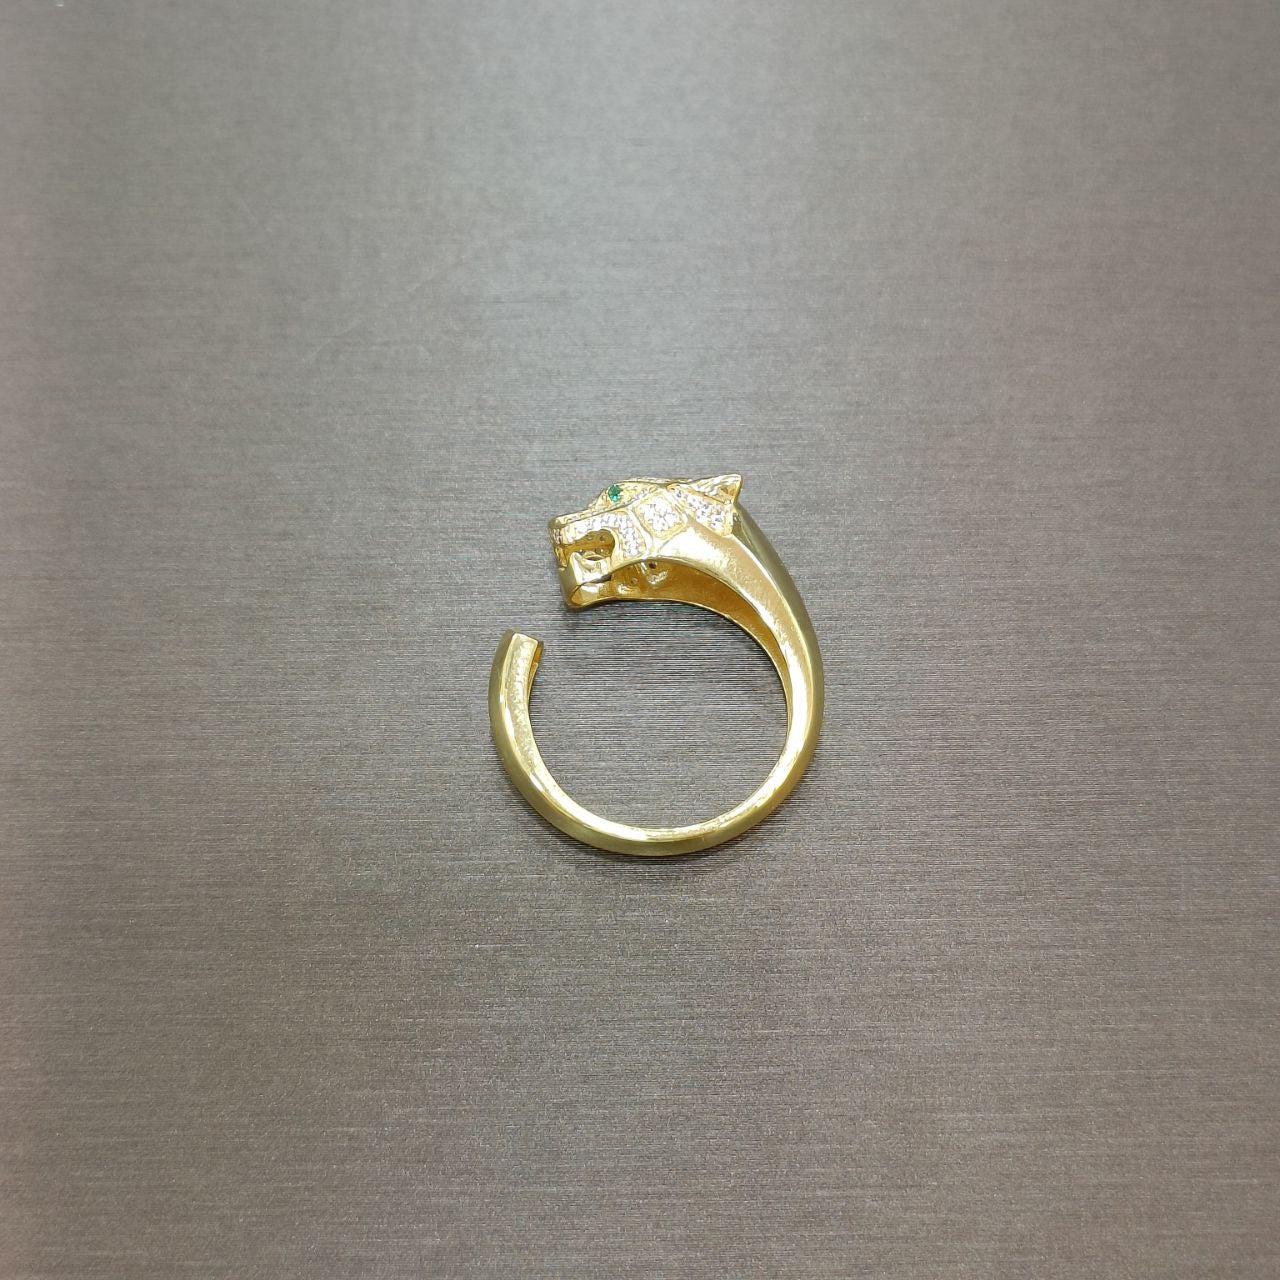 22k / 916 Gold Leopard Ring-916 gold-Best Gold Shop